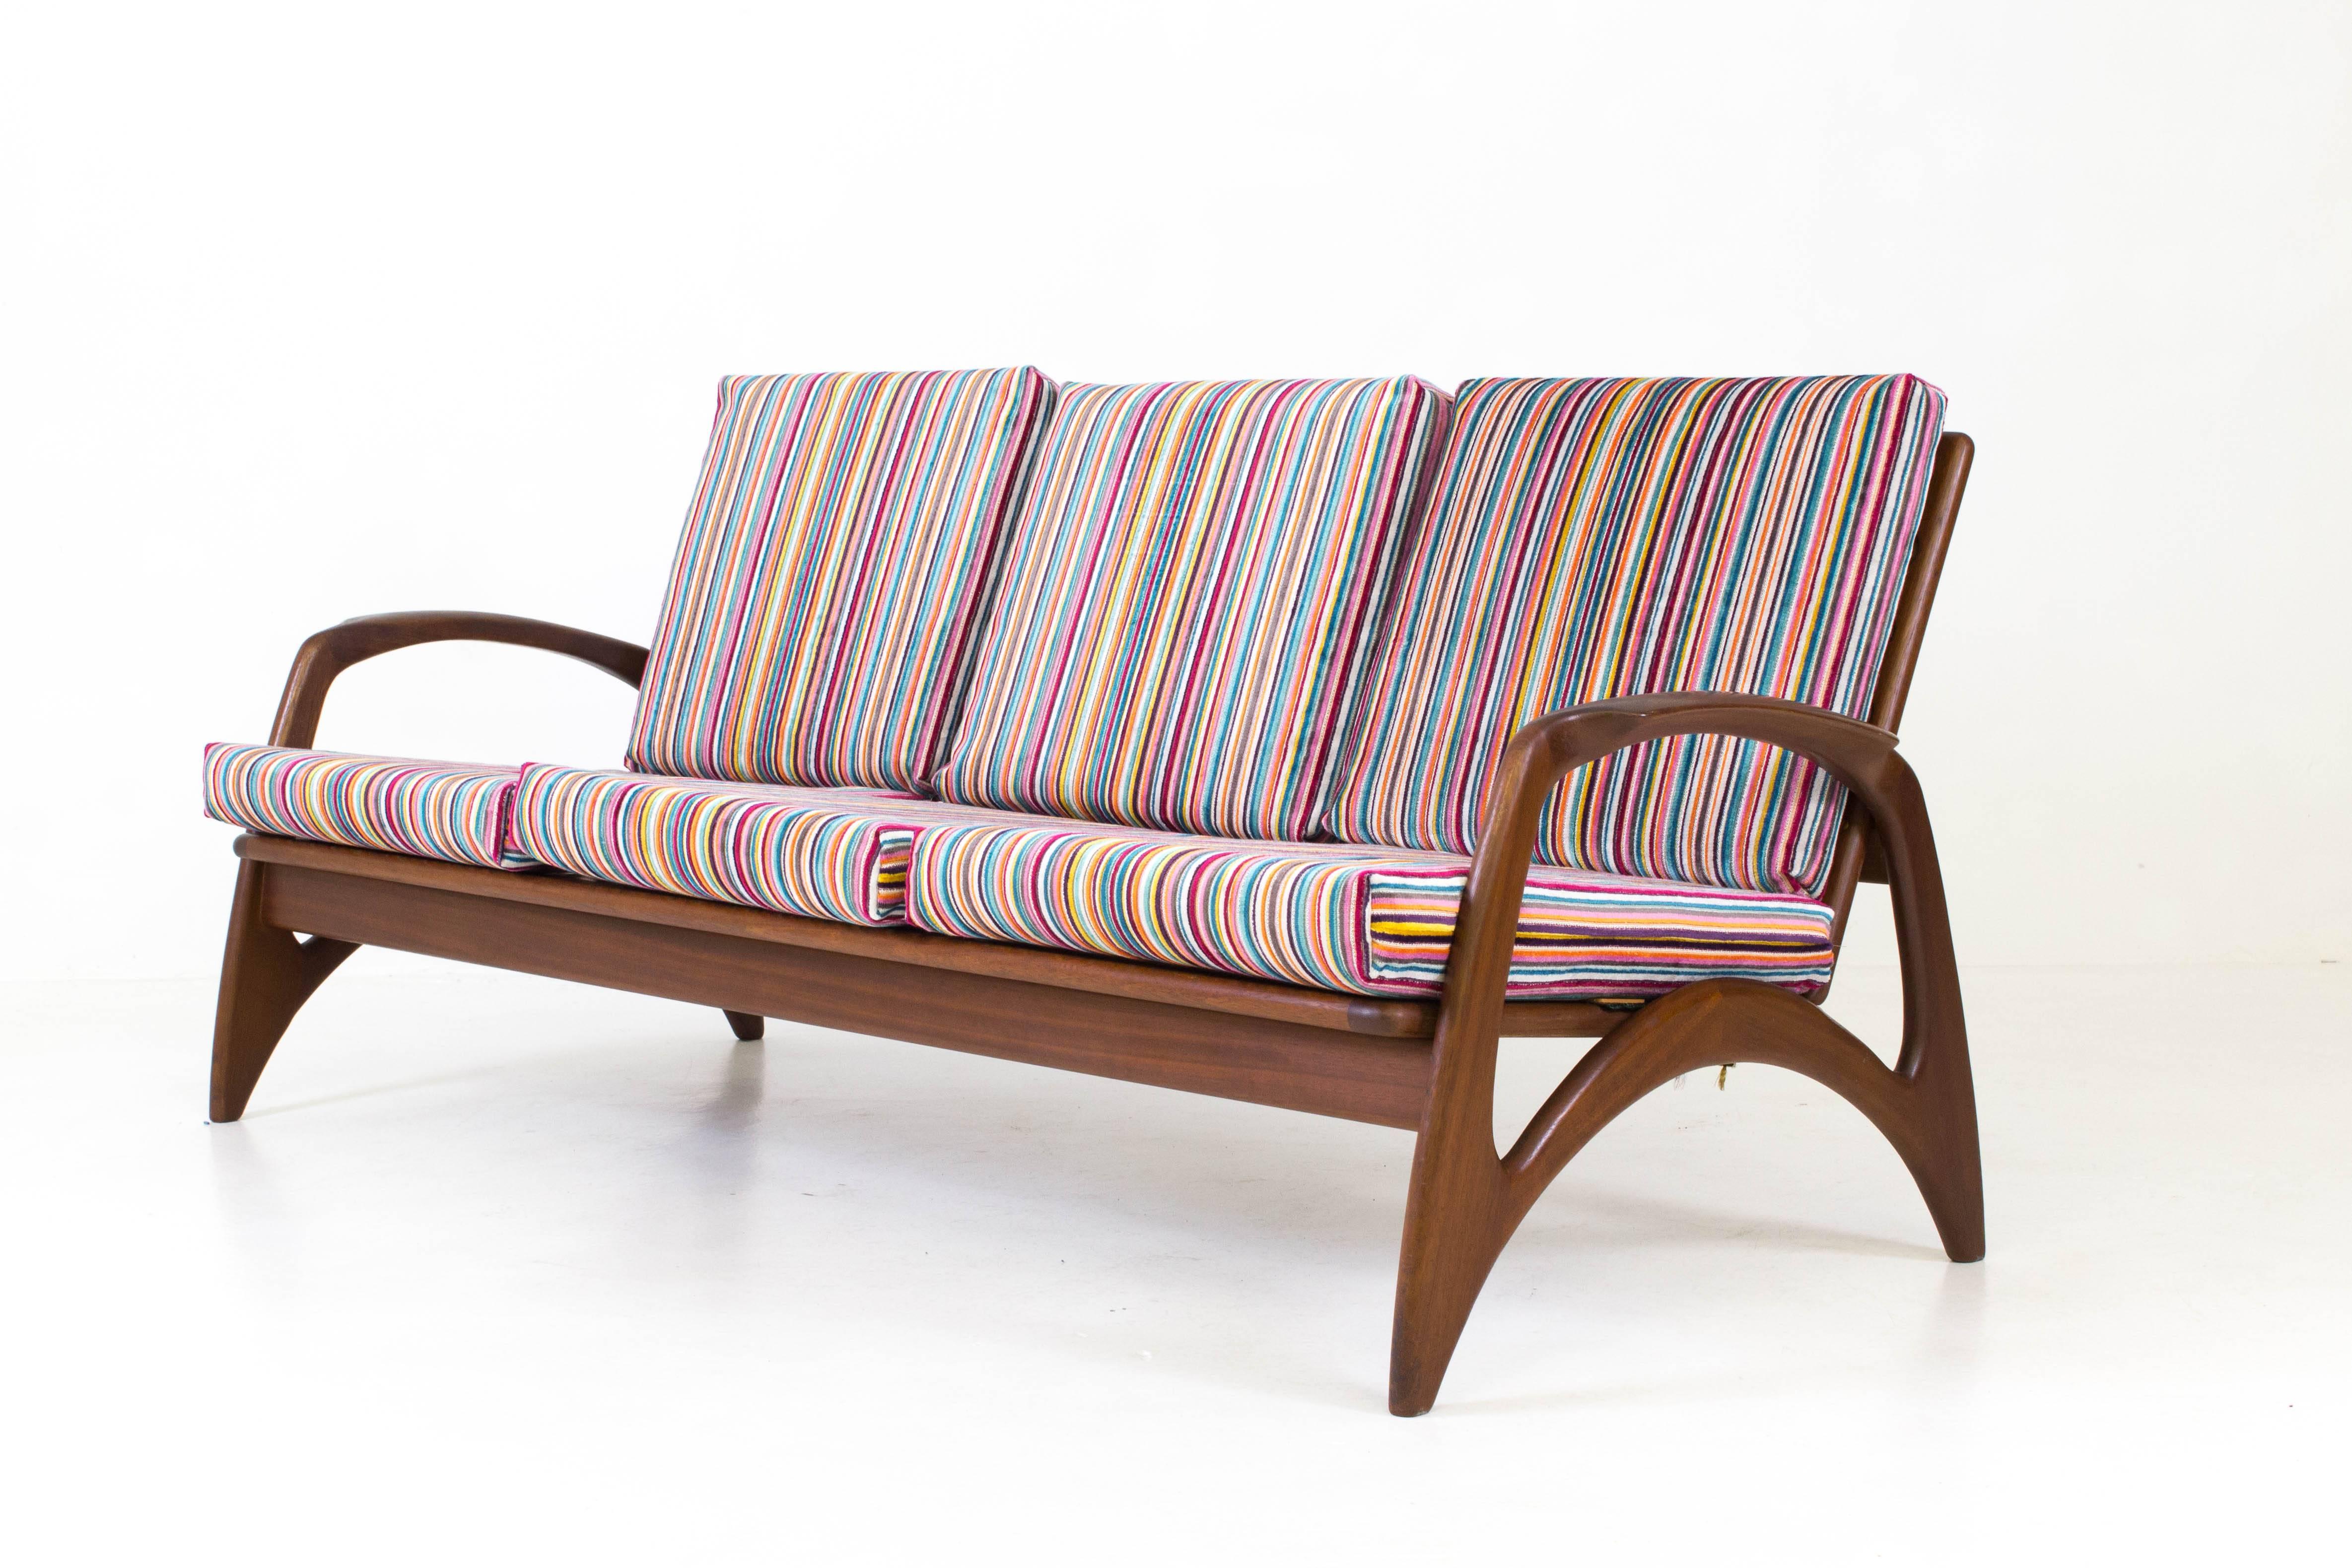 Dutch Mid-Century Modern Teak Sofa or Bench by De Ster Gelderland, 1960s